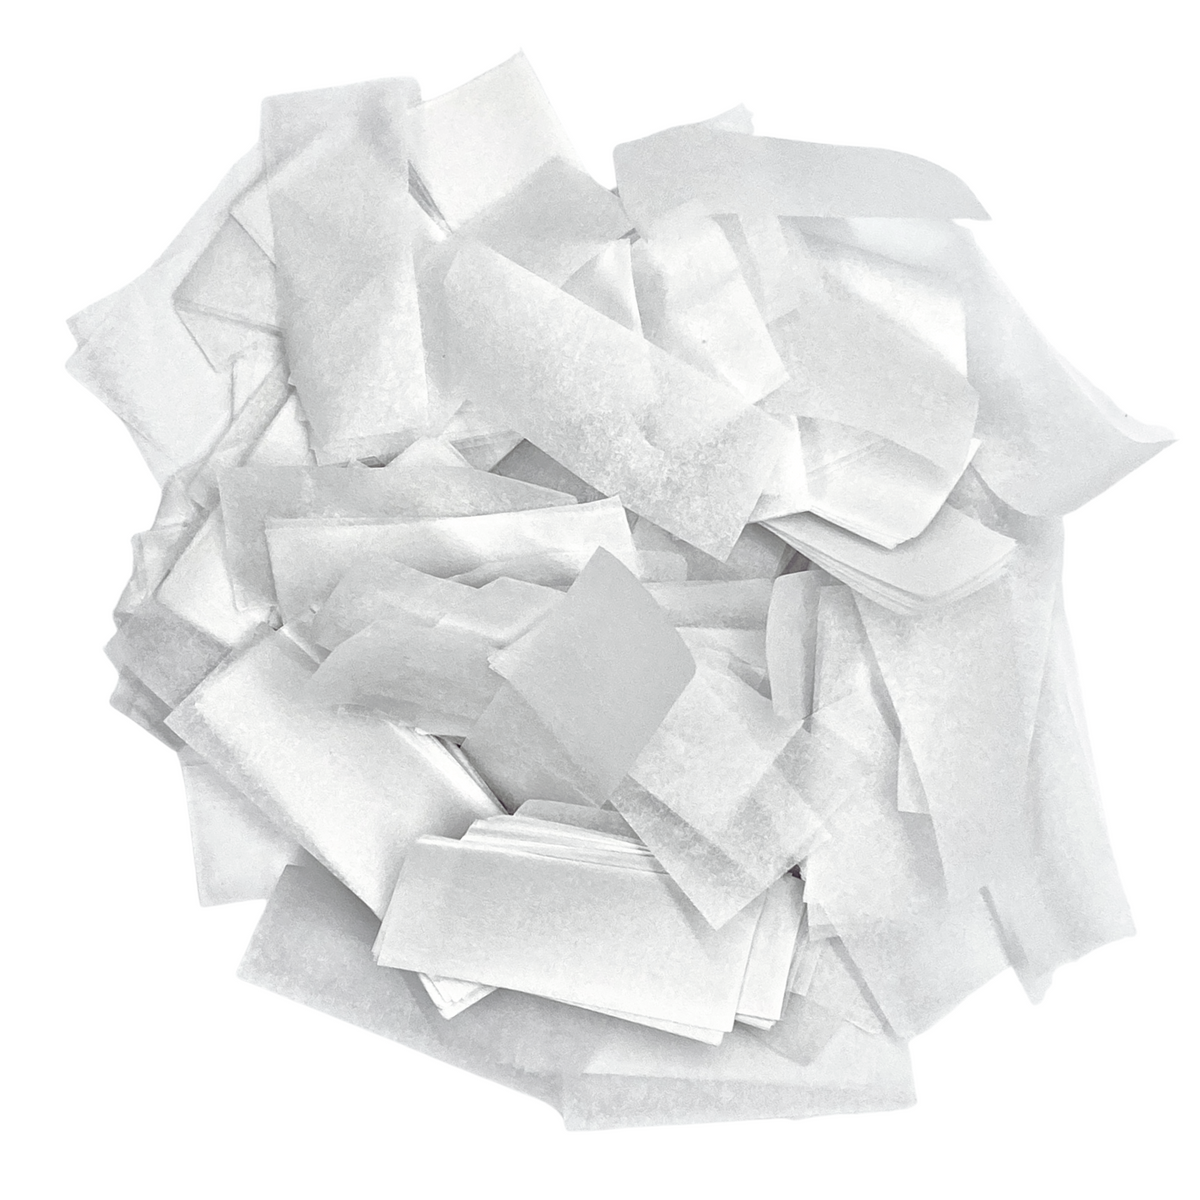 White Rice Paper - Water Soluble Dissolving Confetti (1 Pound Bulk) —  Ultimate Confetti